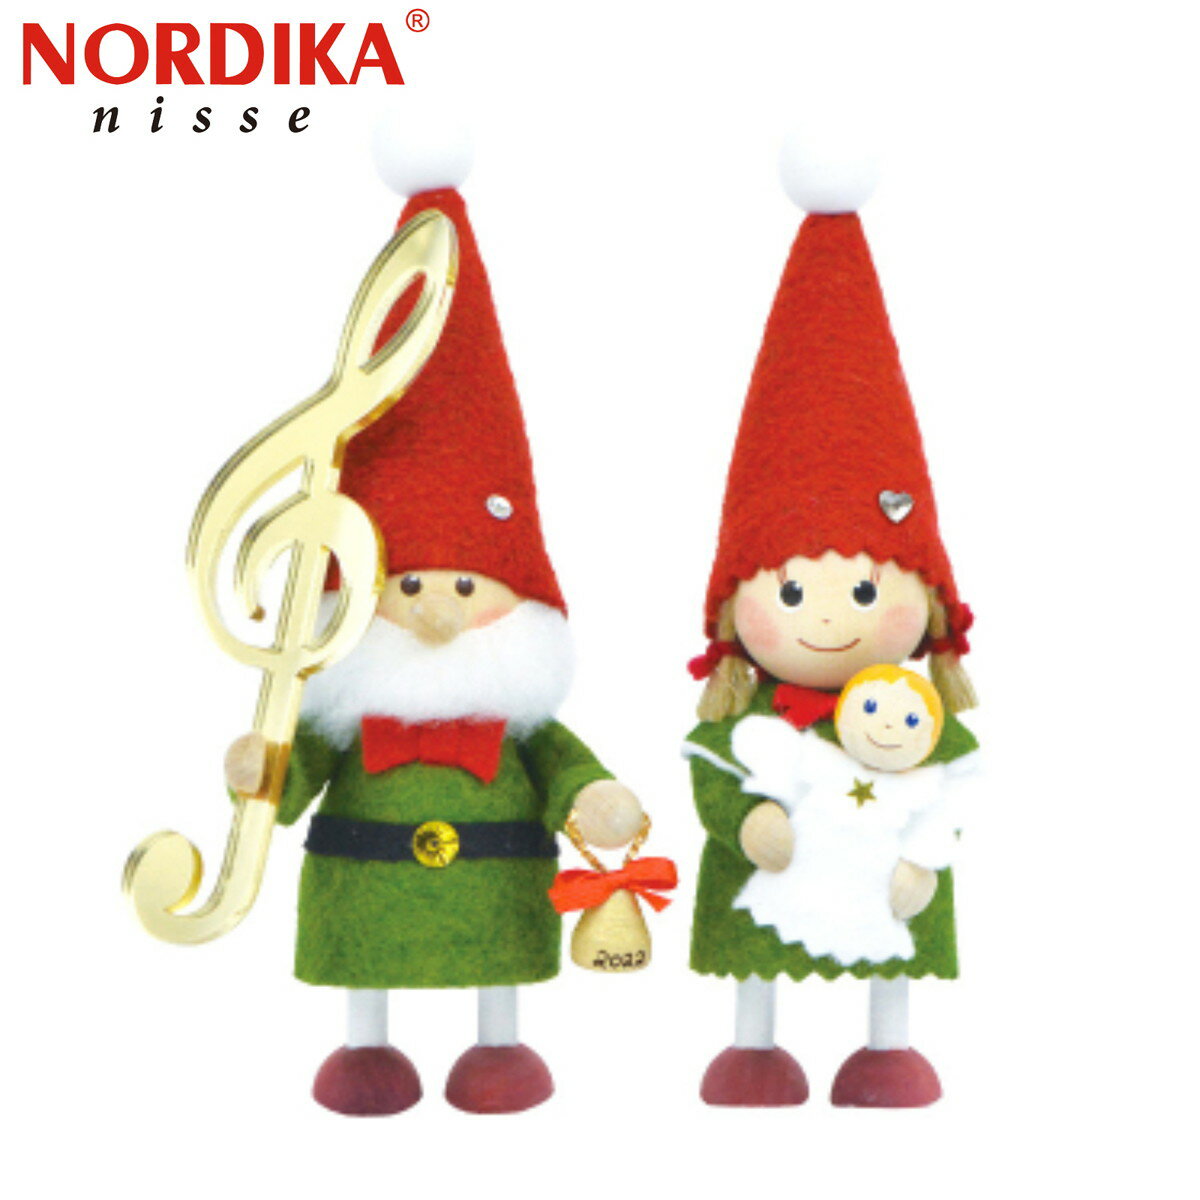 NORDIKA Nisse 【限定商品】ノルディカ ニッセ クリスマス 木製人形 イヤーズノルディカ2022 NRD120710